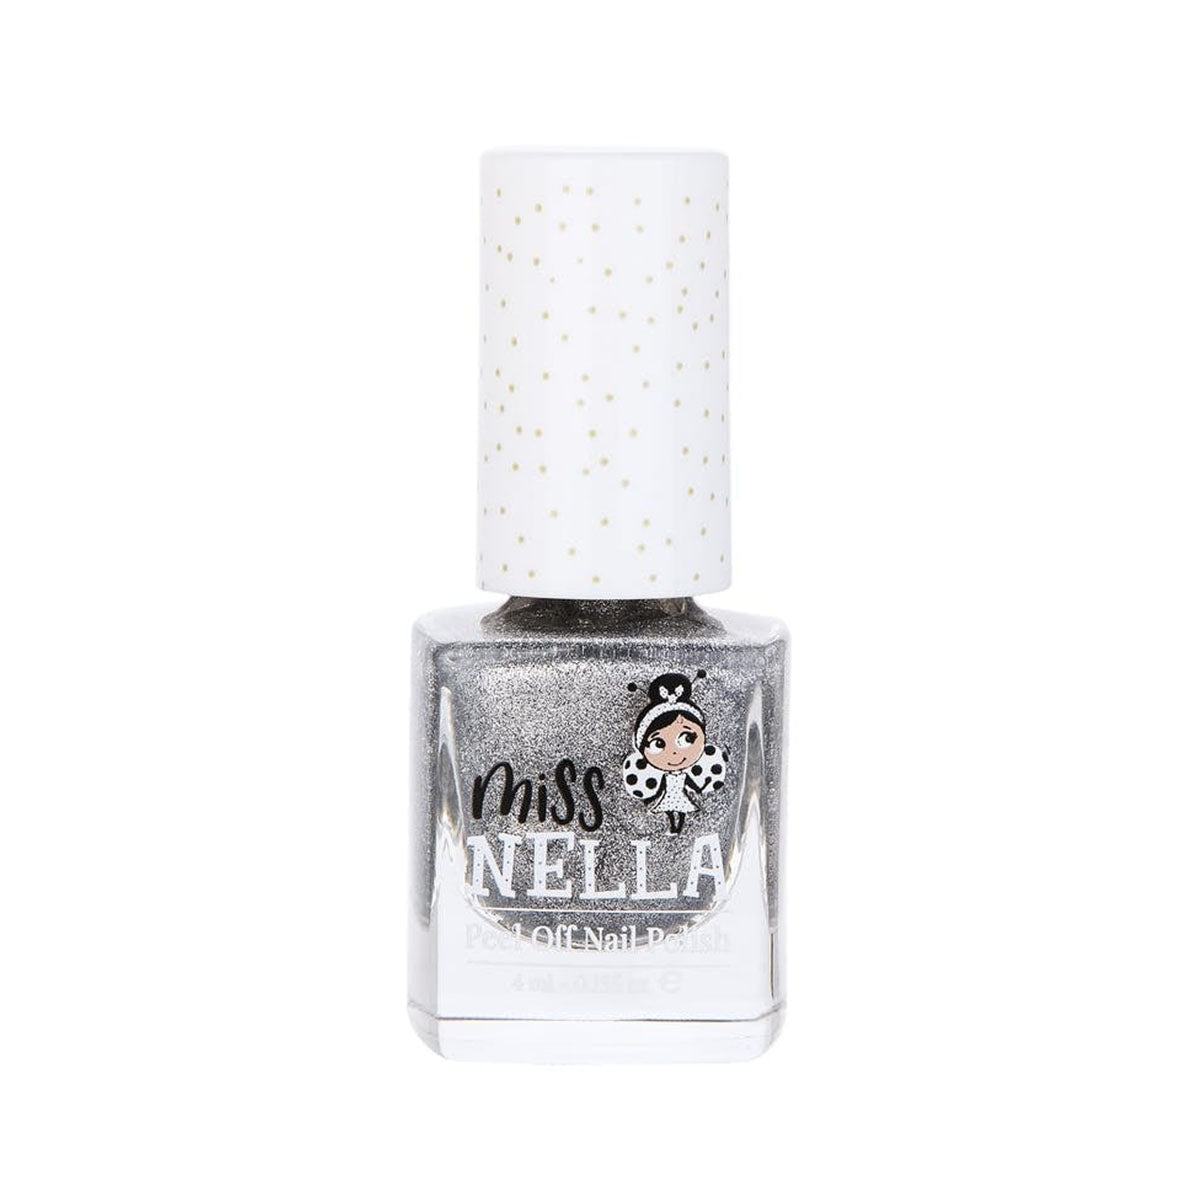 Laat de nageltjes van jouw kindje shinen met de nagellak shooting star van het merk Miss Nella. De peel off nagellak is speciaal ontworpen voor kinderen en is vrij van chemicaliën. In verschillende kleuren. VanZus